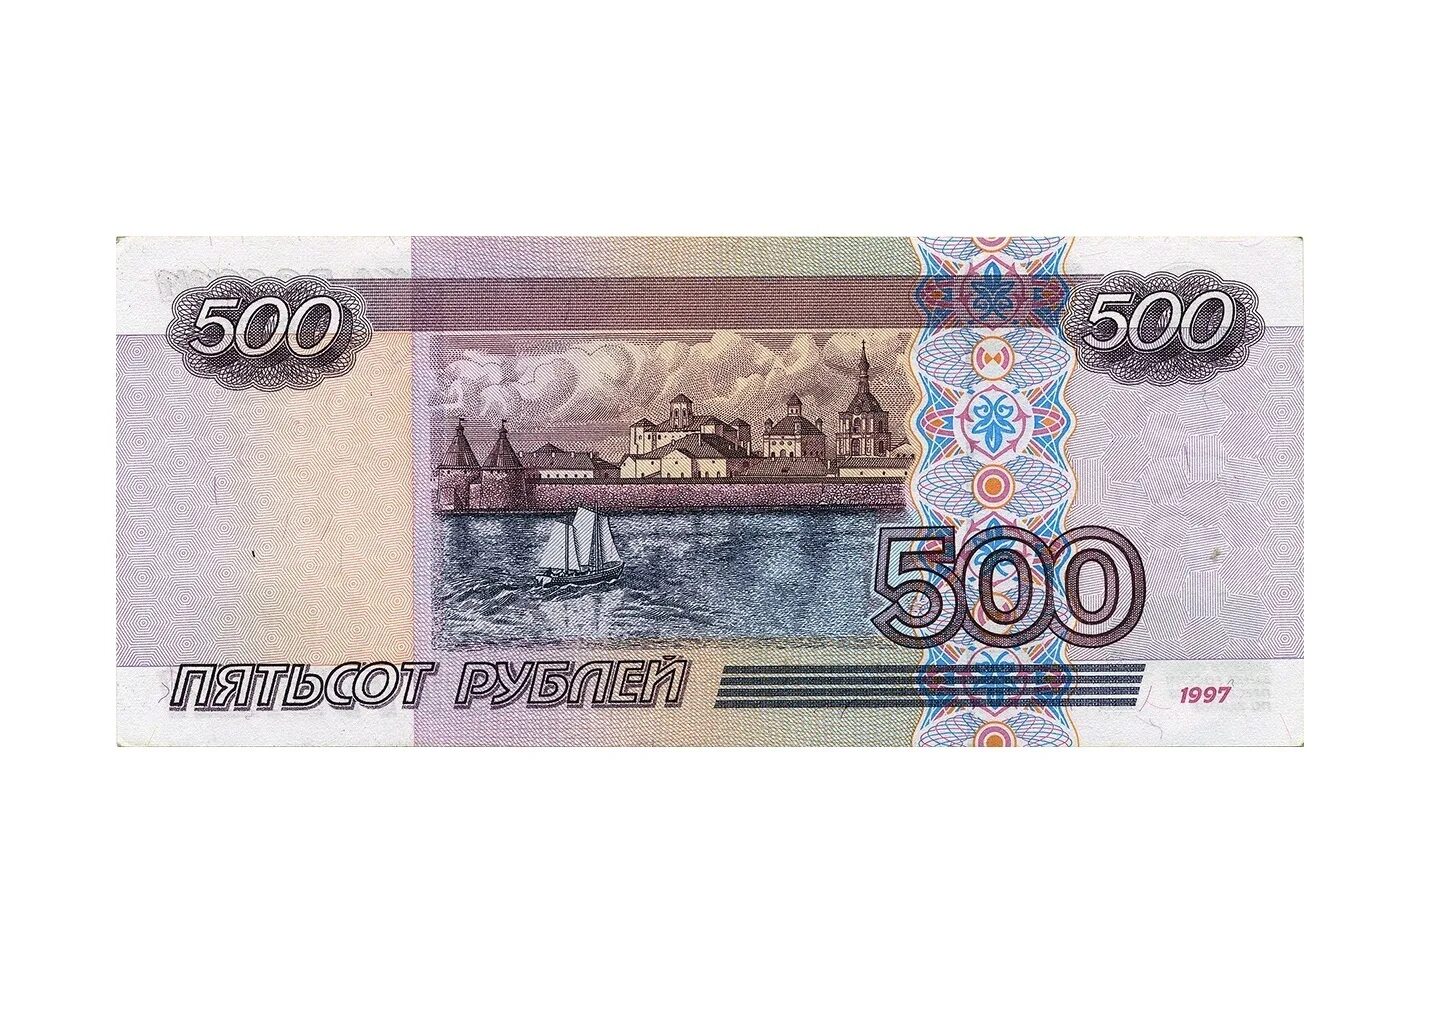 Пятьсот пятьдесят пять тысяч. Российские купюры 500 рублей. Купюры денег 500 рублей.